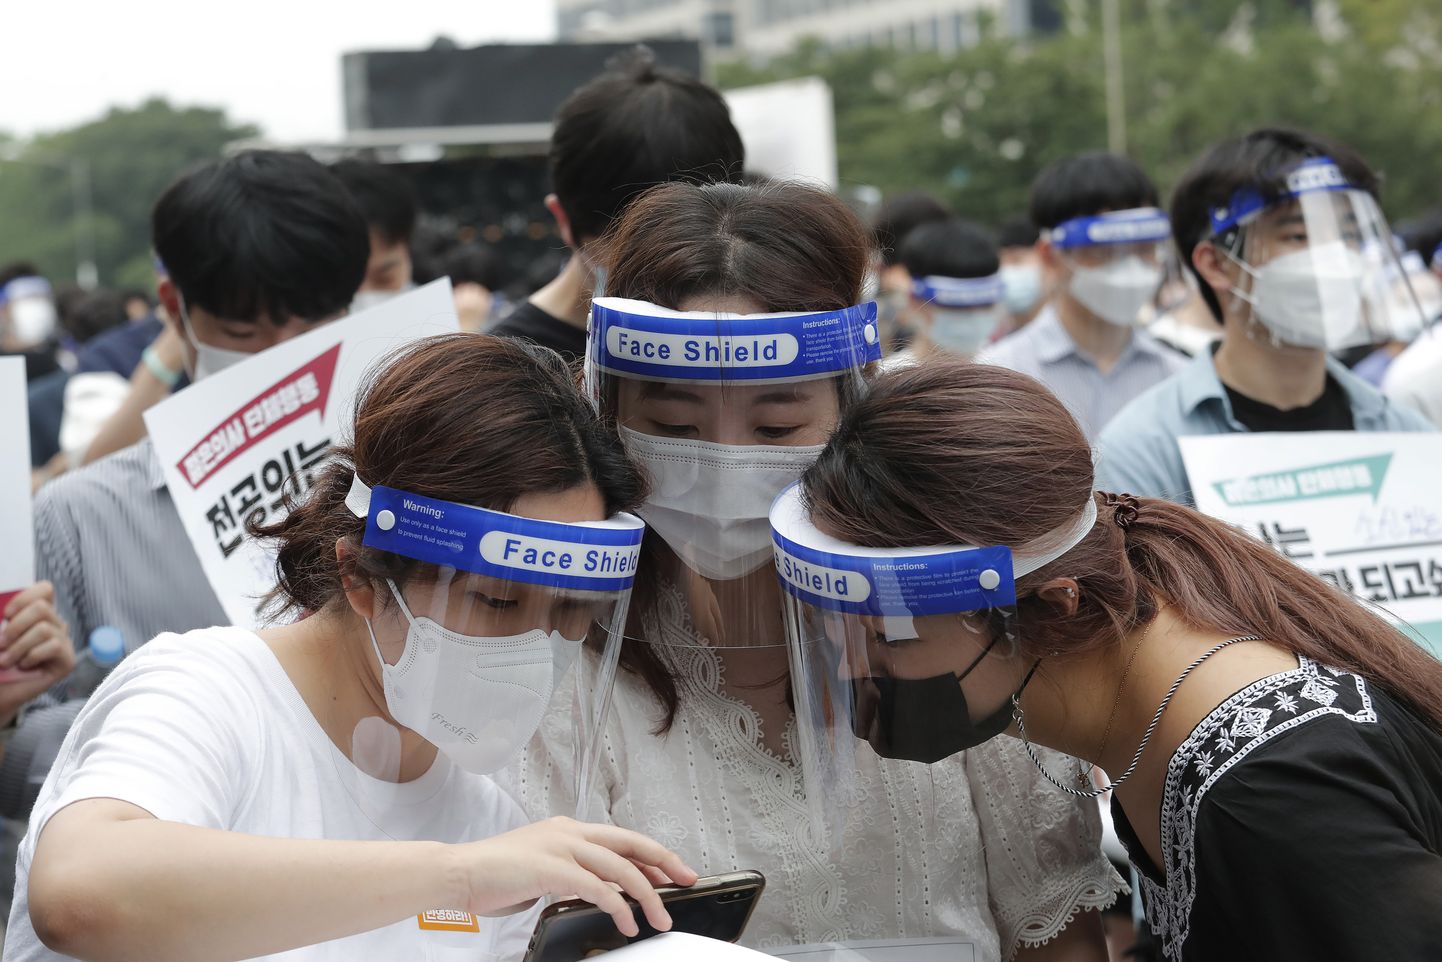 Arst-residendid hetk enne valitsuse koroonapoliitika vastu suunatud meeleavaldust Lõuna-Korea pealinnas Soulis 7. augustil 2020. Tuhanded noored arstid tõstsid häält, et juhtida tähelepanu riigi tervishoiupoliitika ja koroonahaigete raviga seotud puudustele.